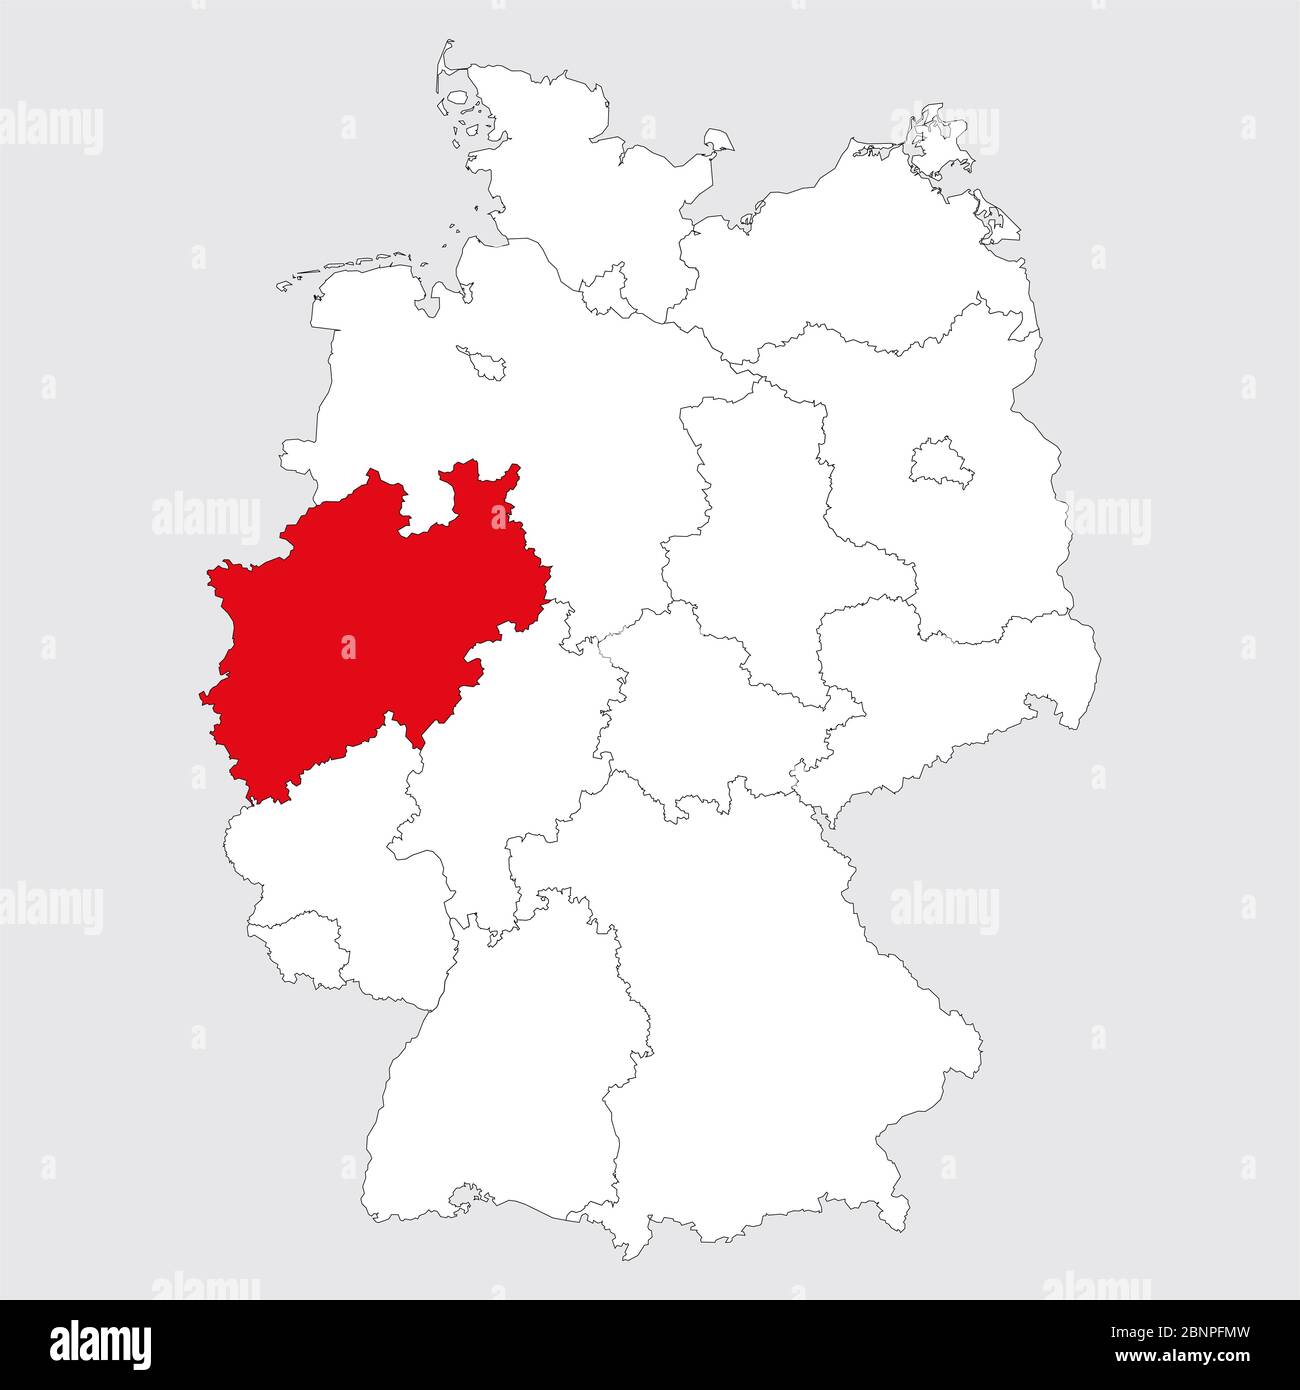 Nordrhein-westfalen Provinz hervorgehoben deutschland Karte. Grauer Hintergrund. Politische Landkarte Deutschlands. Stock Vektor